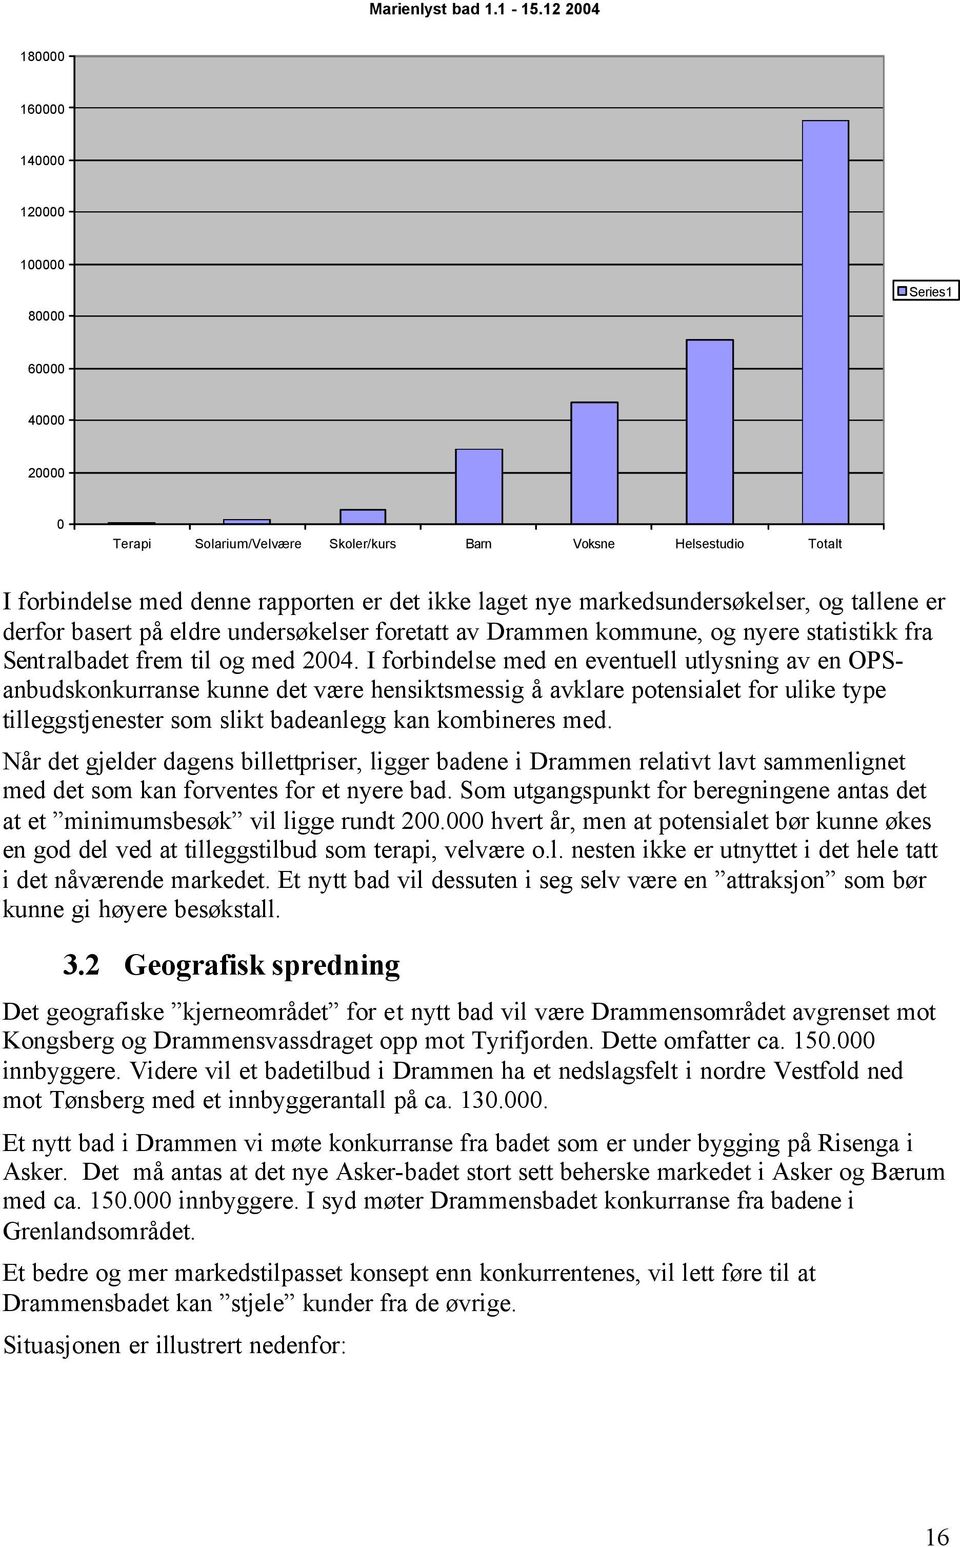 markedsundersøkelser, og tallene er derfor basert på eldre undersøkelser foretatt av Drammen kommune, og nyere statistikk fra Sentralbadet frem til og med 2004.